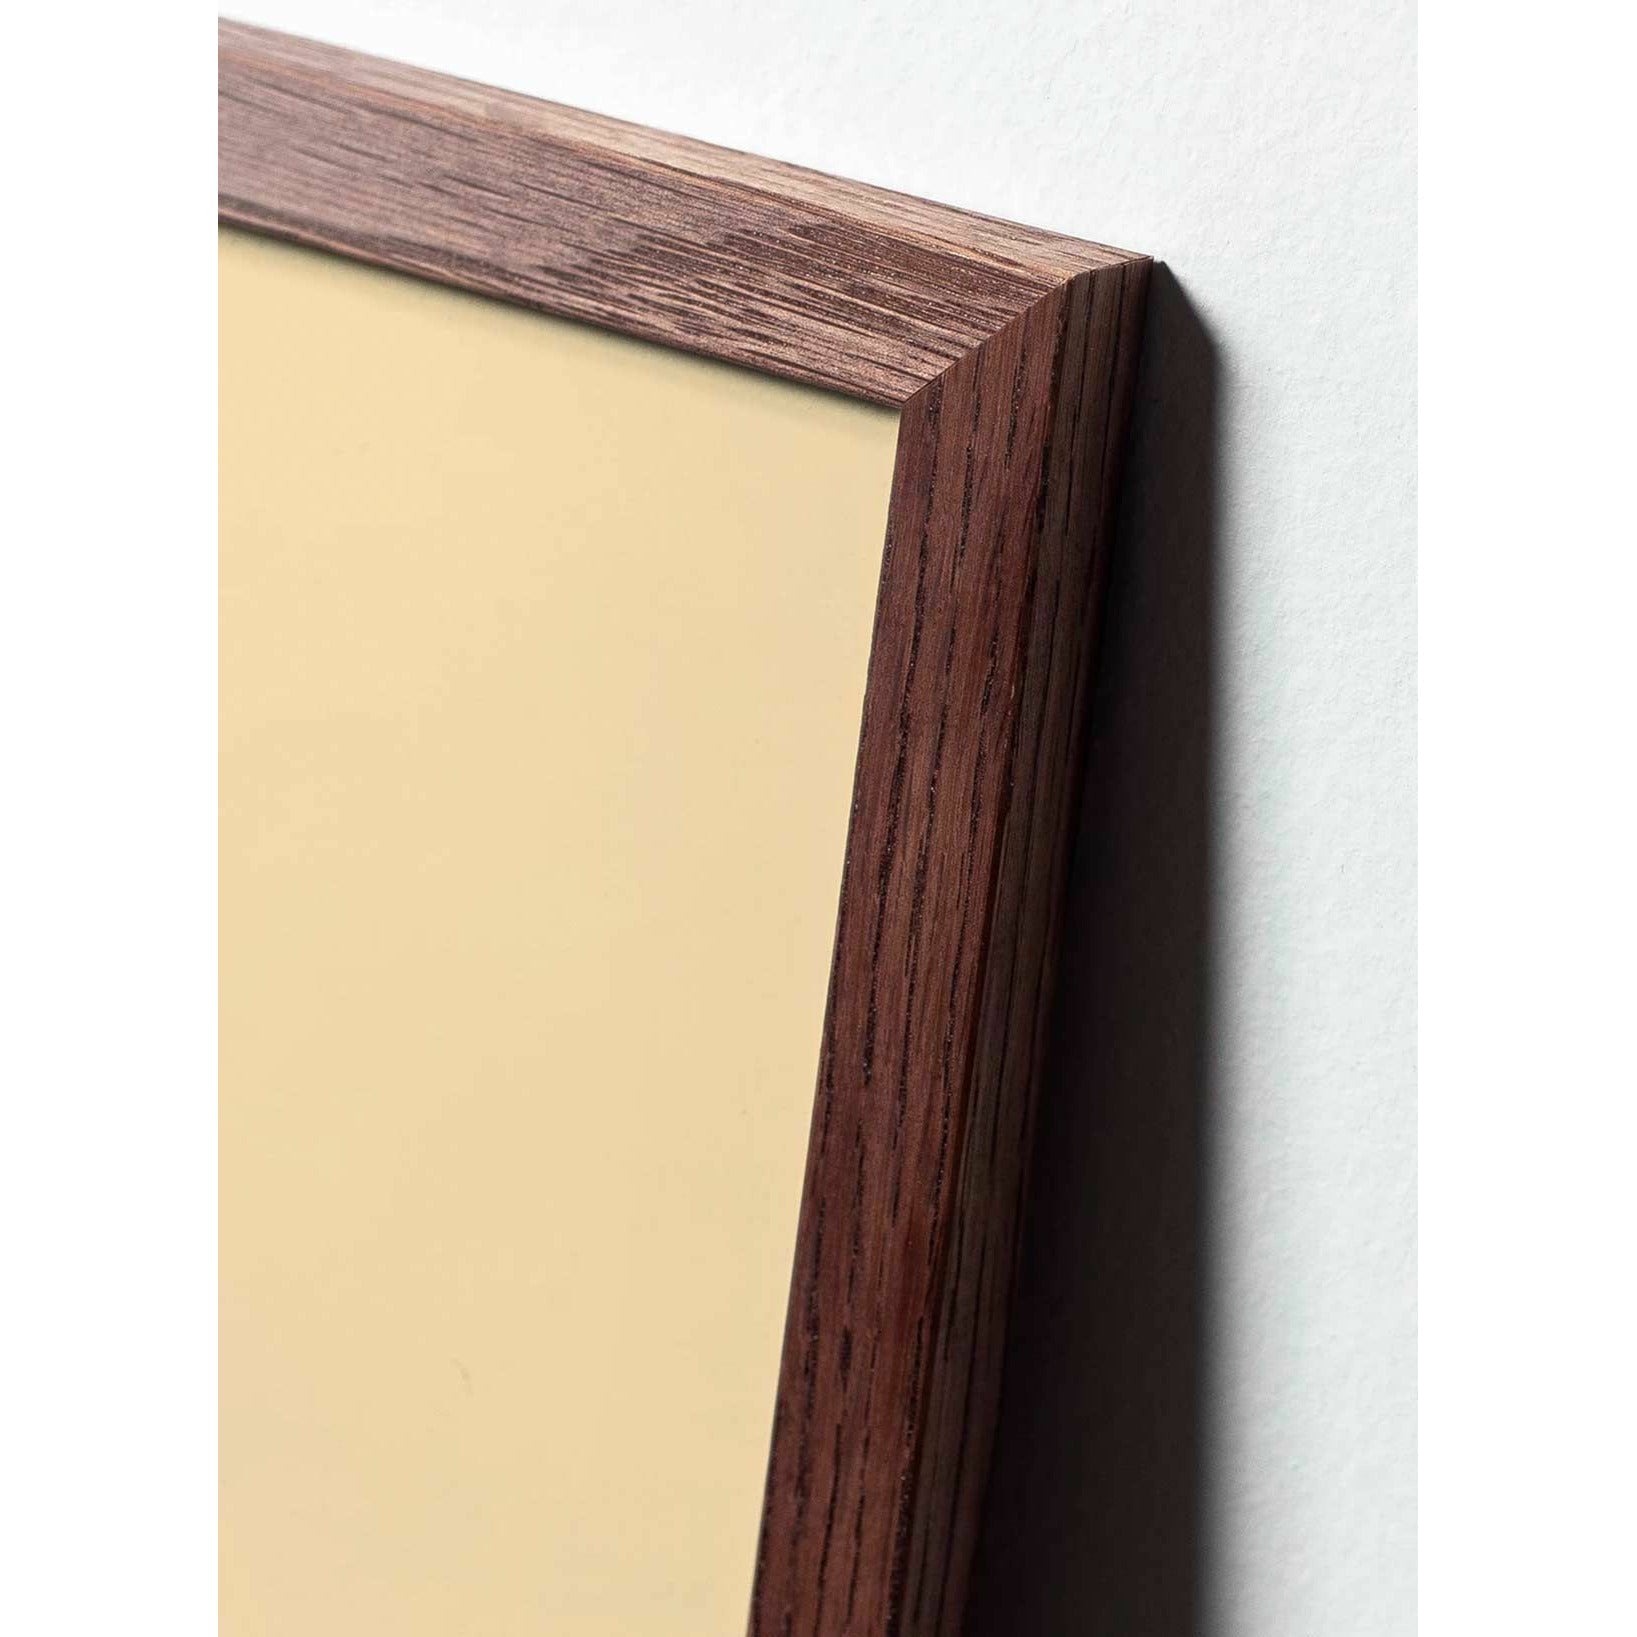 Póster clásico de cono de pino de creación, marco hecho de madera oscura 30x40 cm, fondo negro